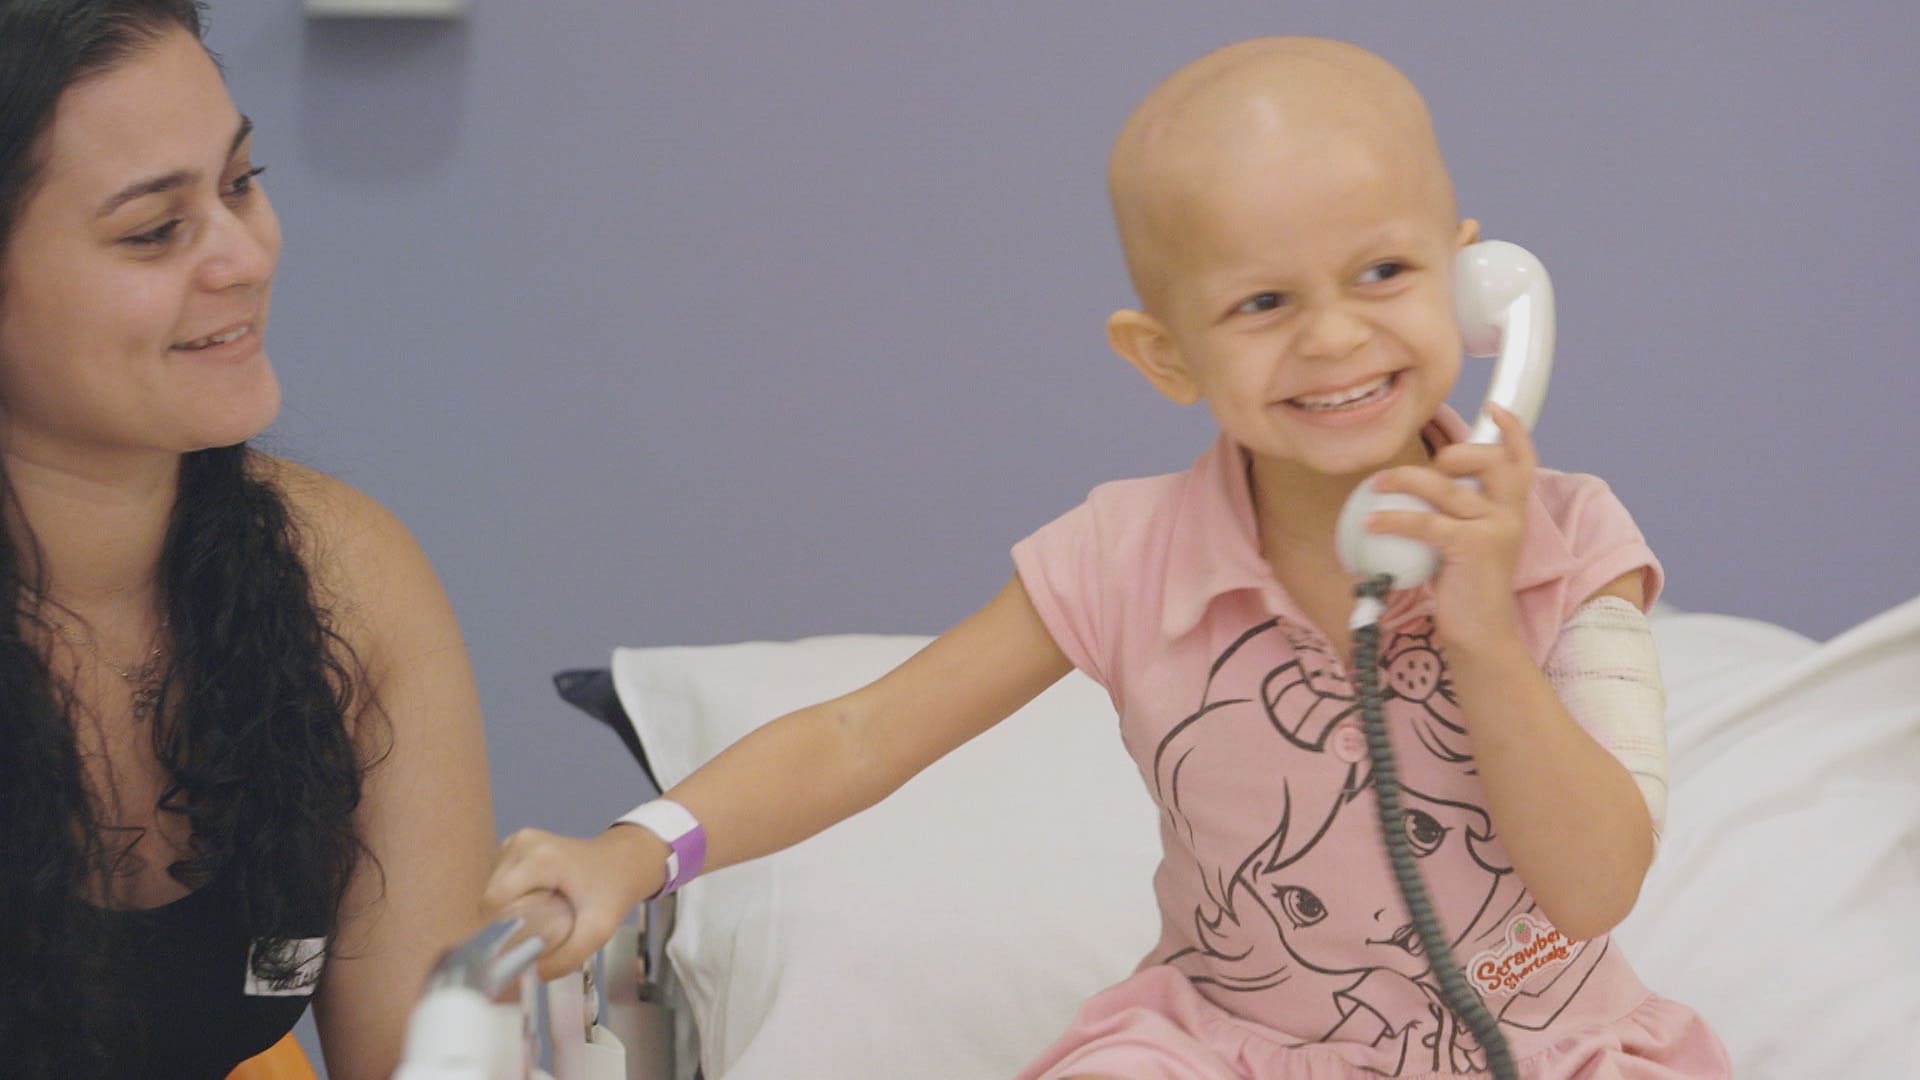 Vídeo traz lições de vida de crianças com câncer